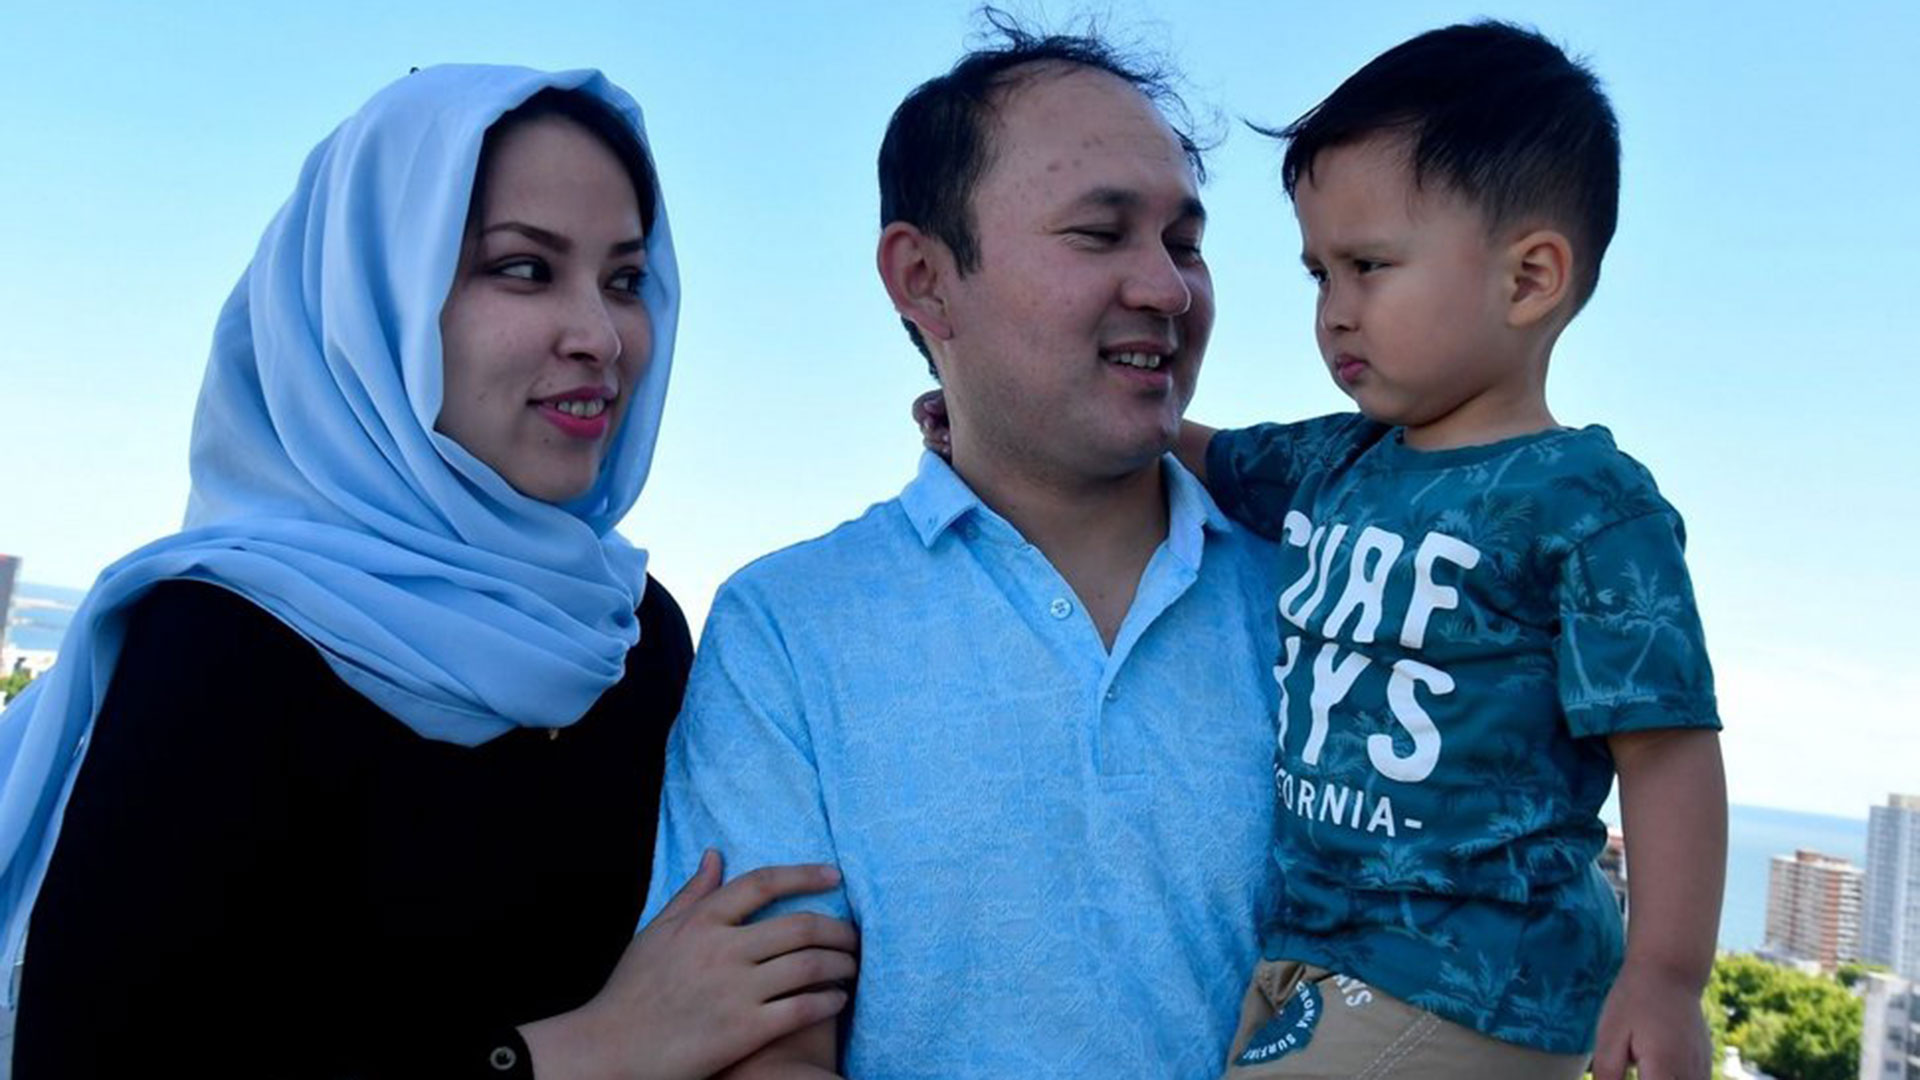 La familia afgana en Uruguay, compuesta por una pareja de 31 años y un niño que cumple 3 en febrero. Debieron huir porque los talibanes los perseguían. 
(foto: El Observador)